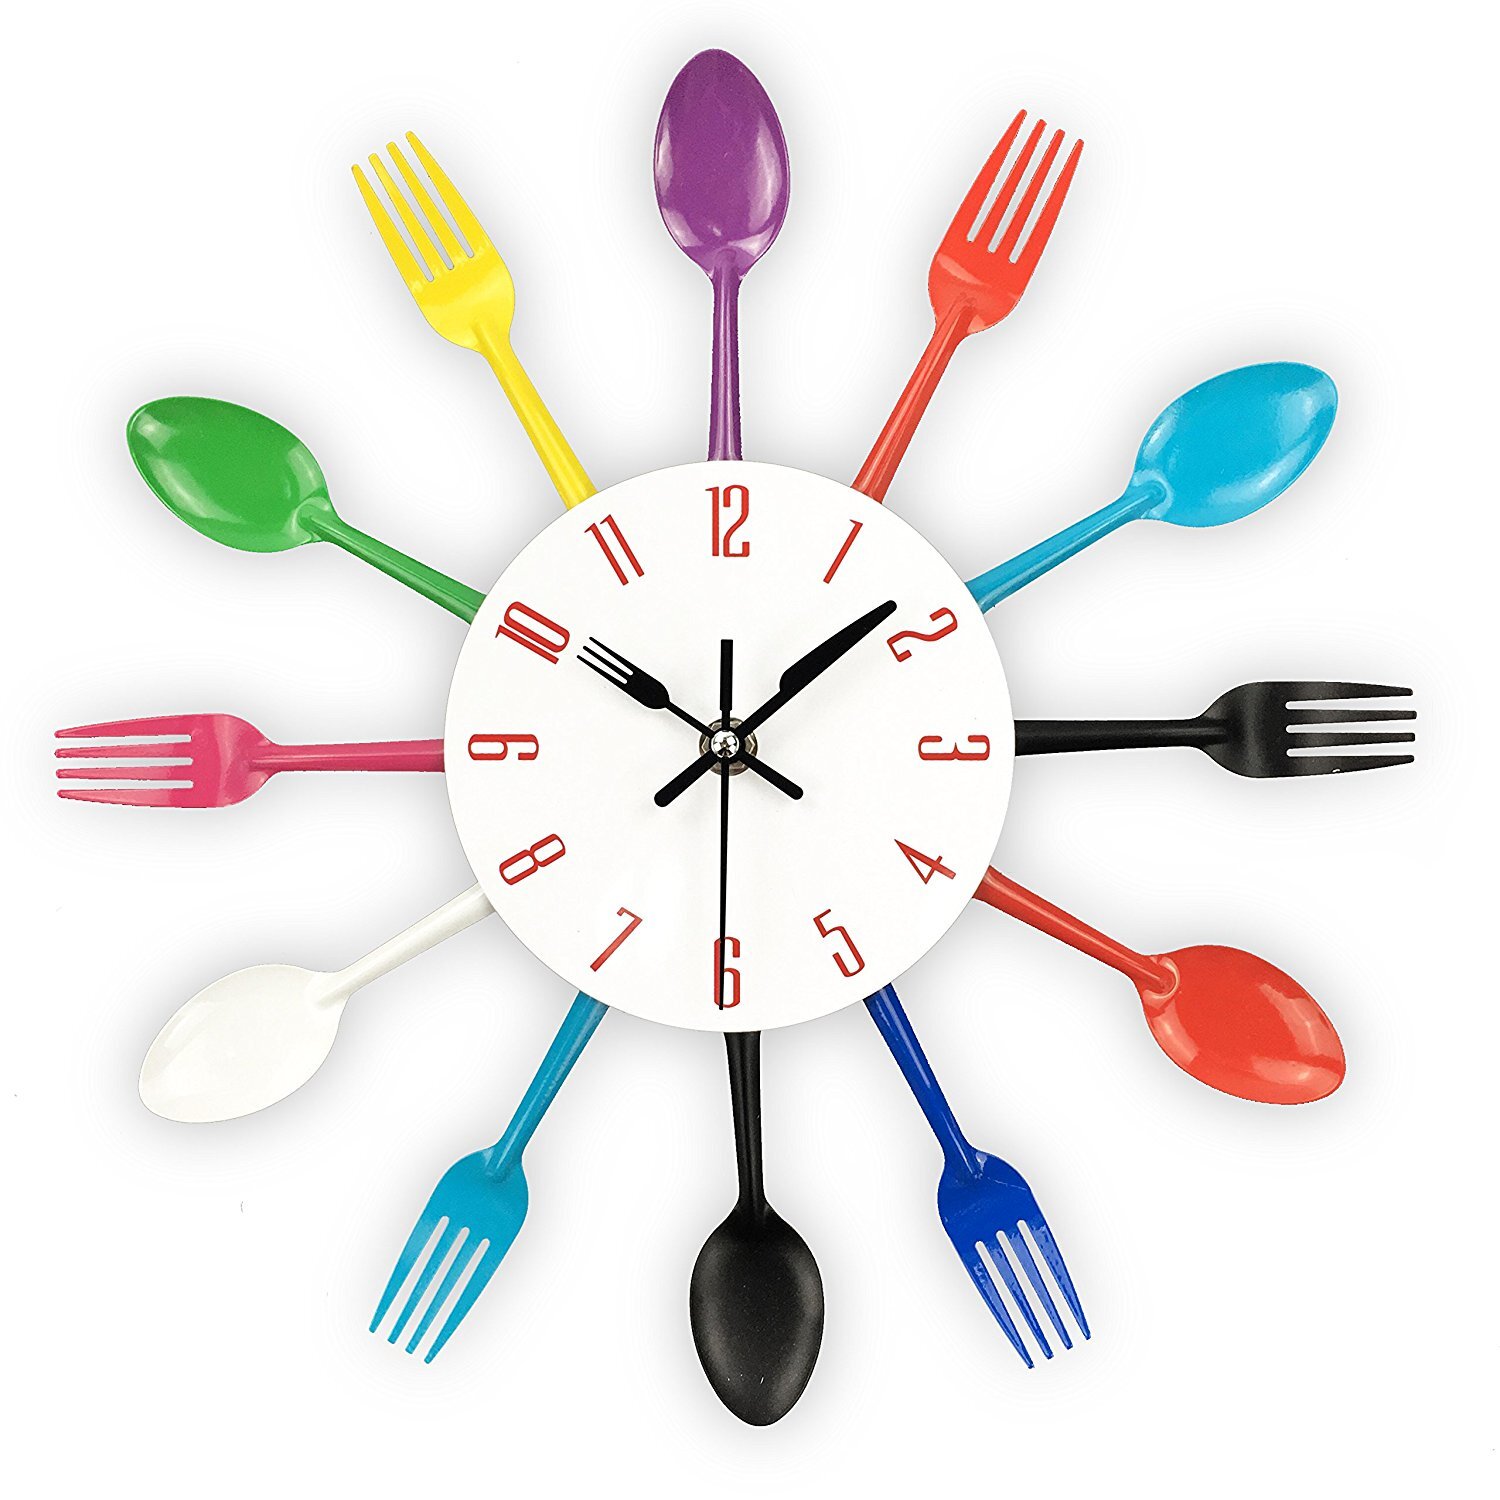 Современные часы для кухни